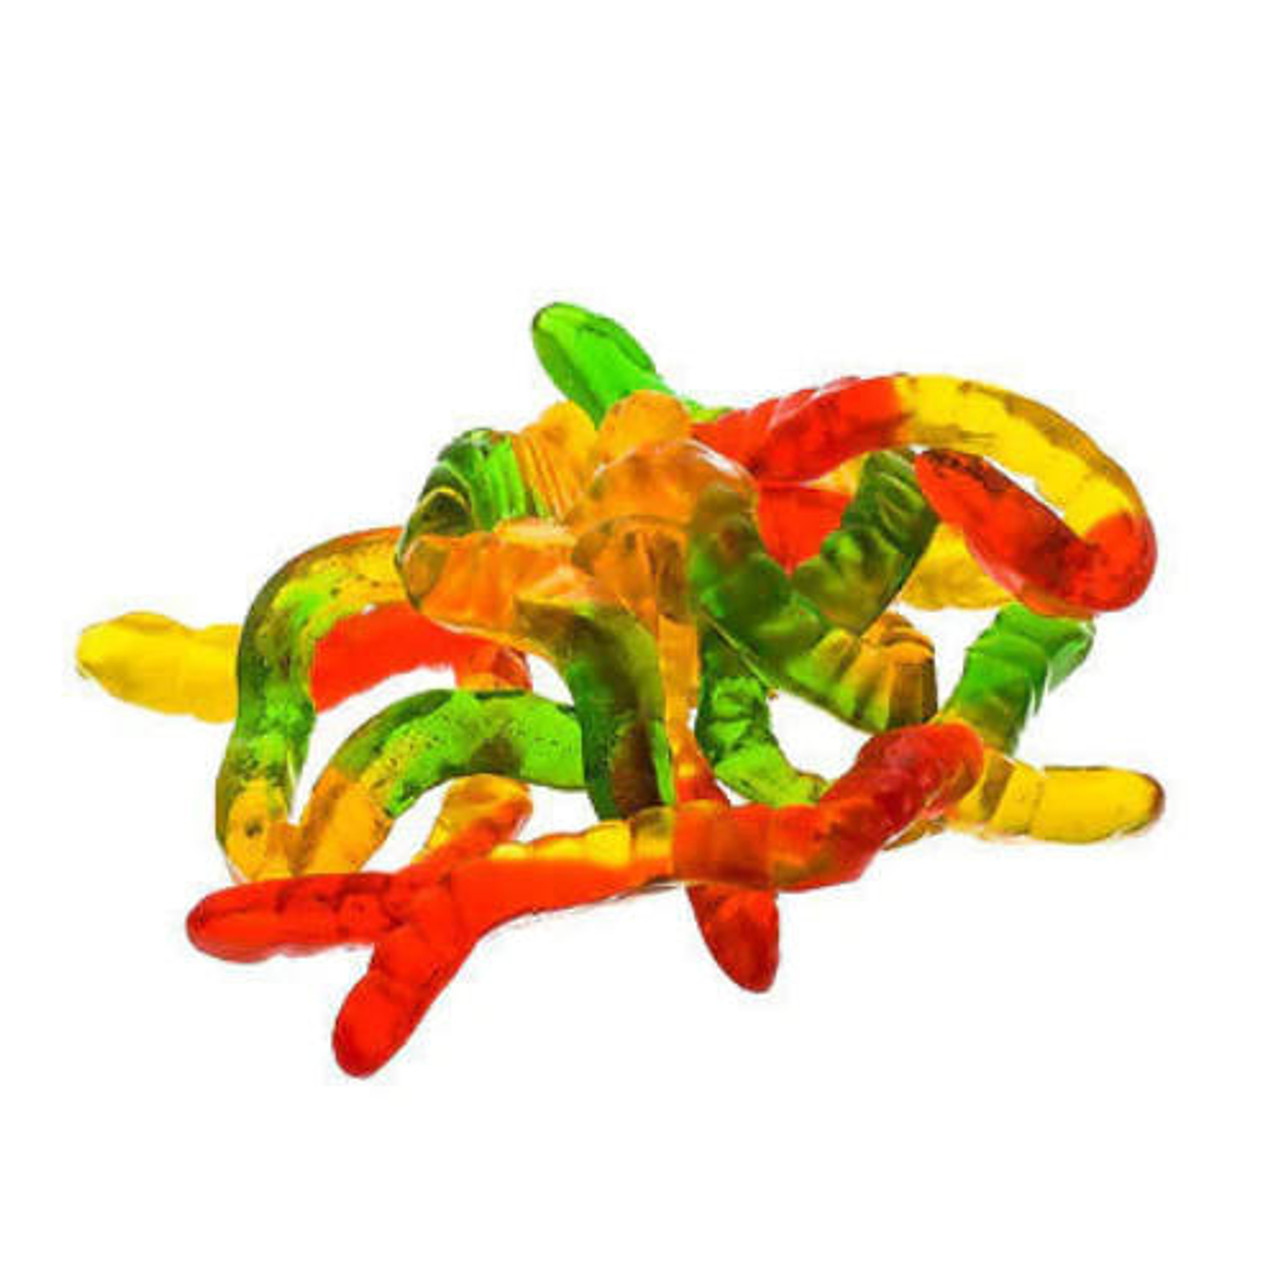  Kervan Gummy Worms 5 lb. - 4/Case - Assorted Flavors 